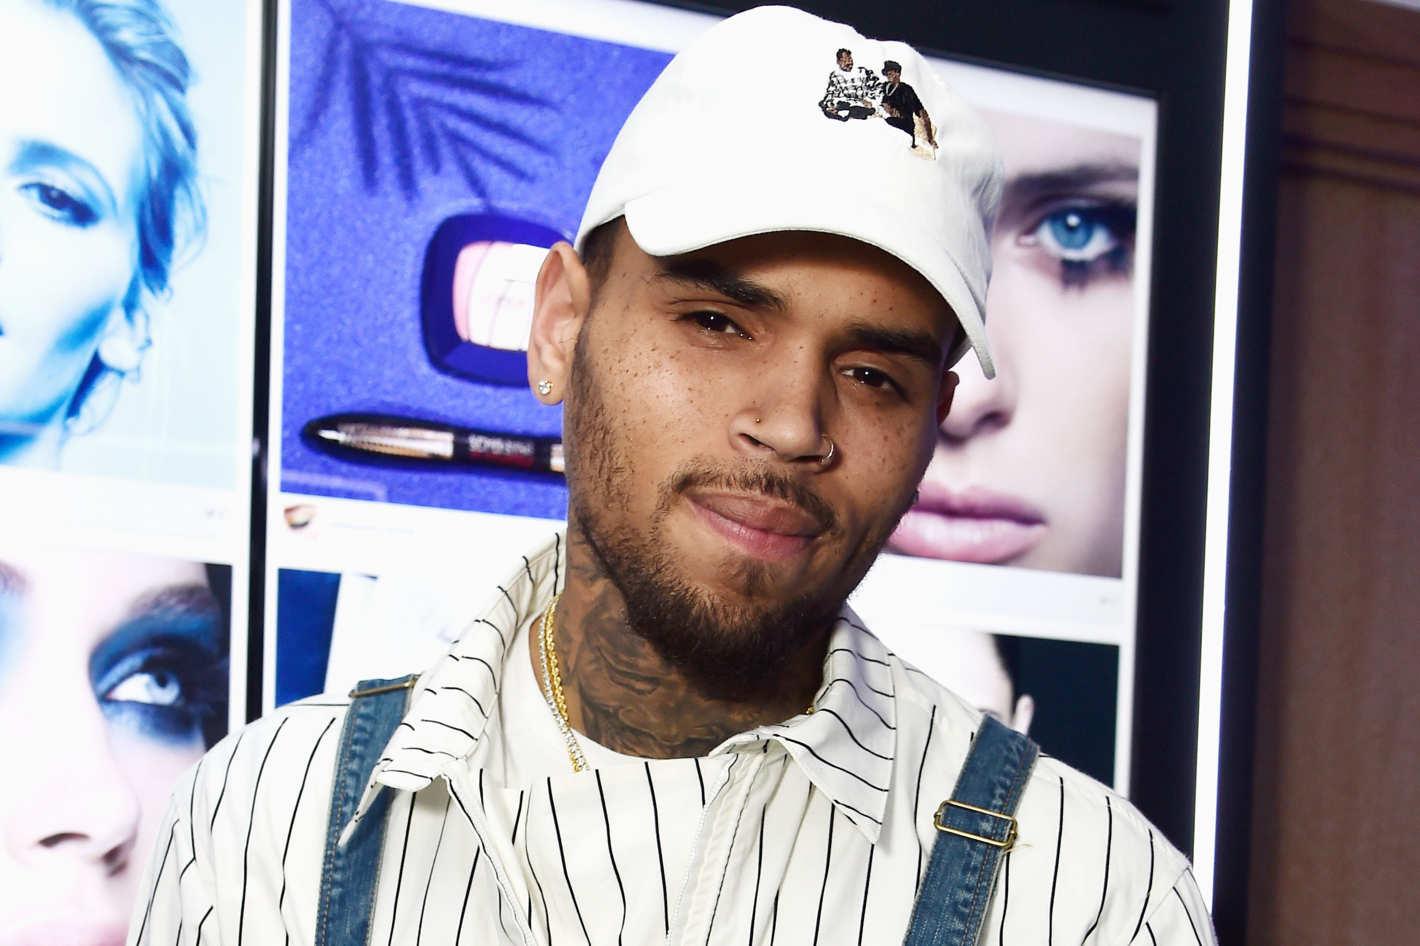 Chris Brown Songs Leak Online